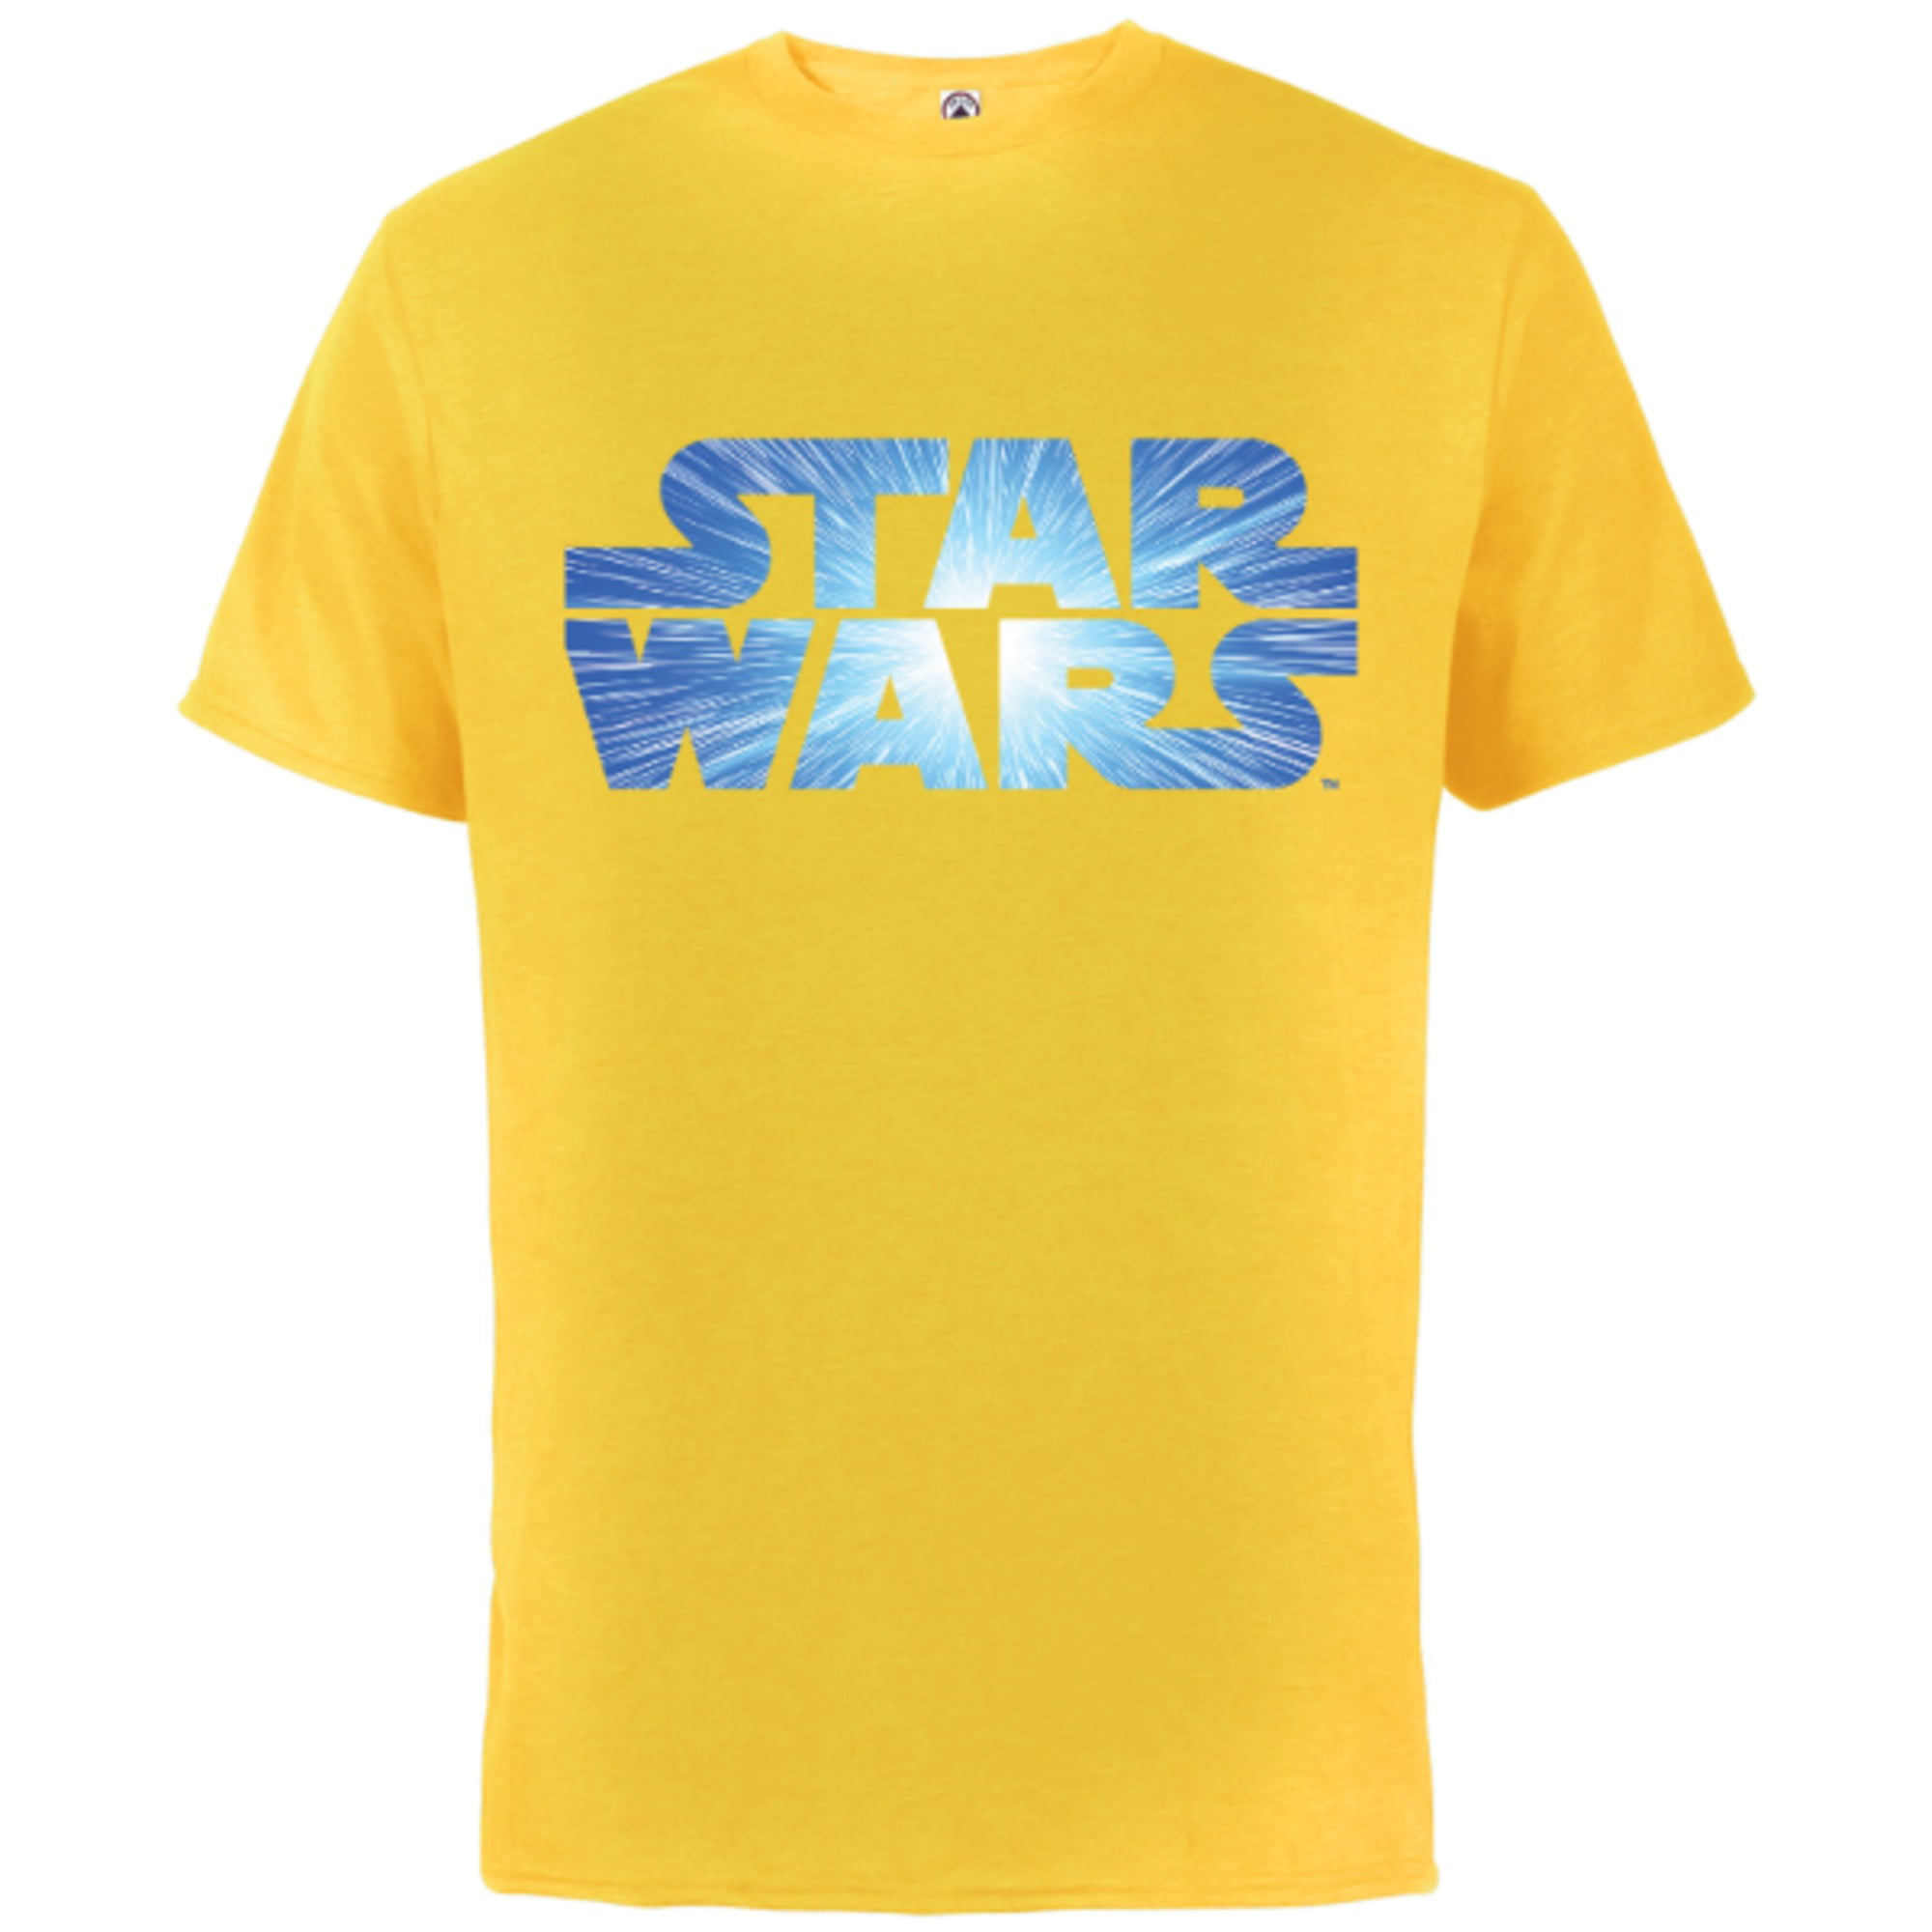 Jump to Lightspeed - Short Sleeve T-Shirt for Adults - Customized-Sunflower - Walmart.com